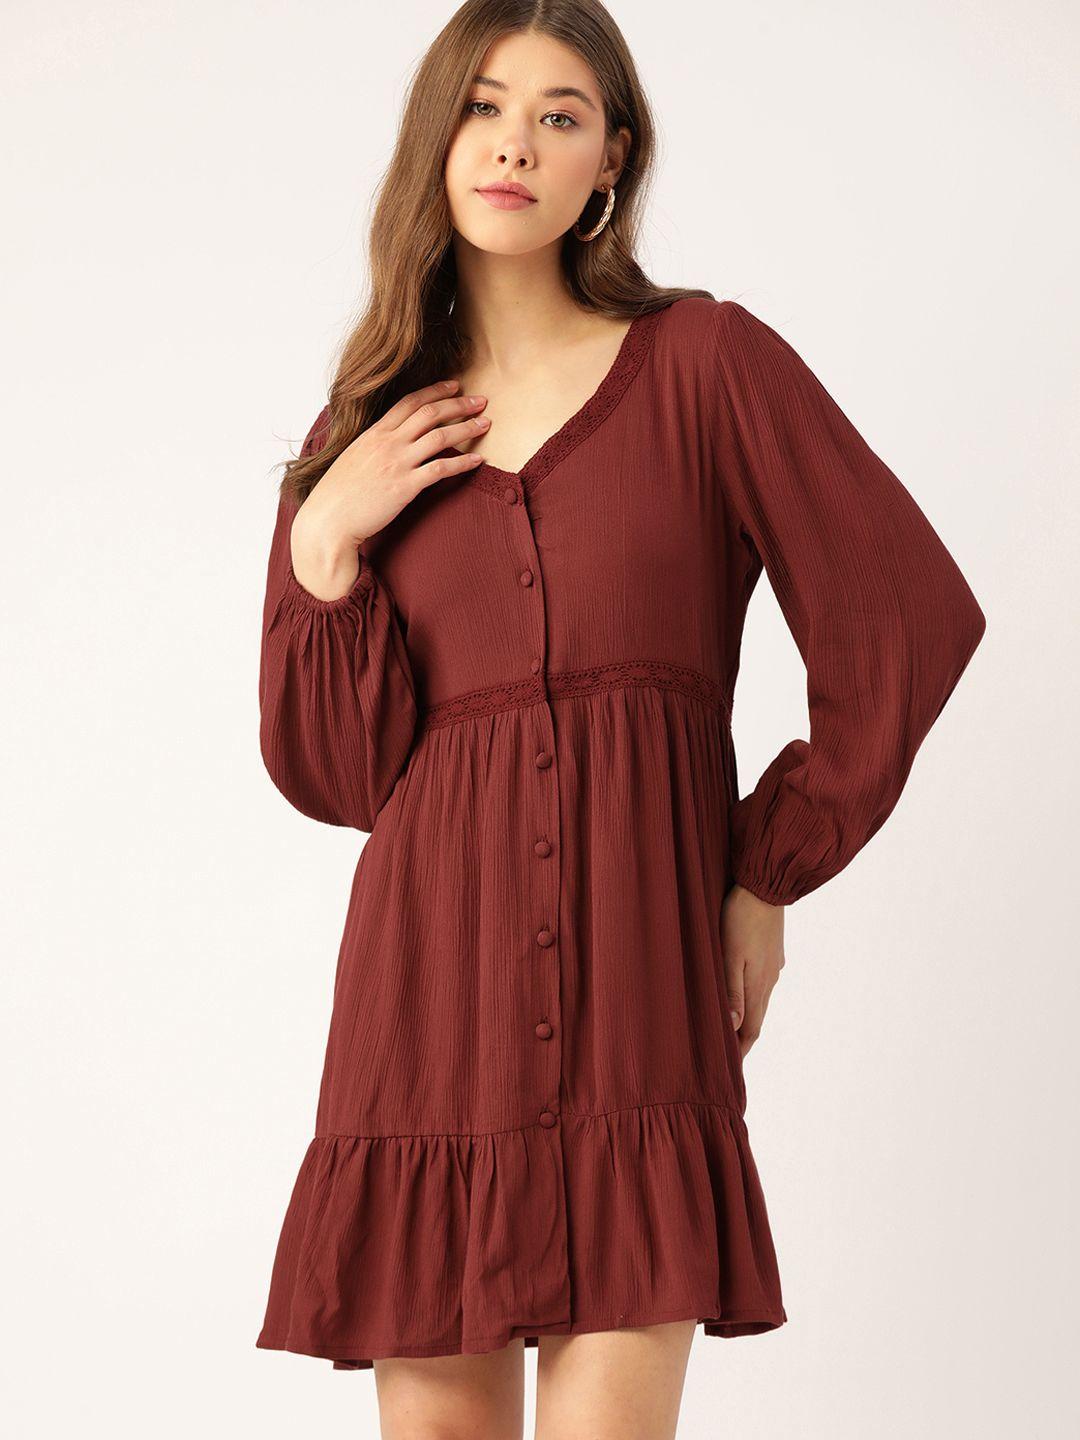 dressberry-women-rust-red-textured-knit-a-line-dress